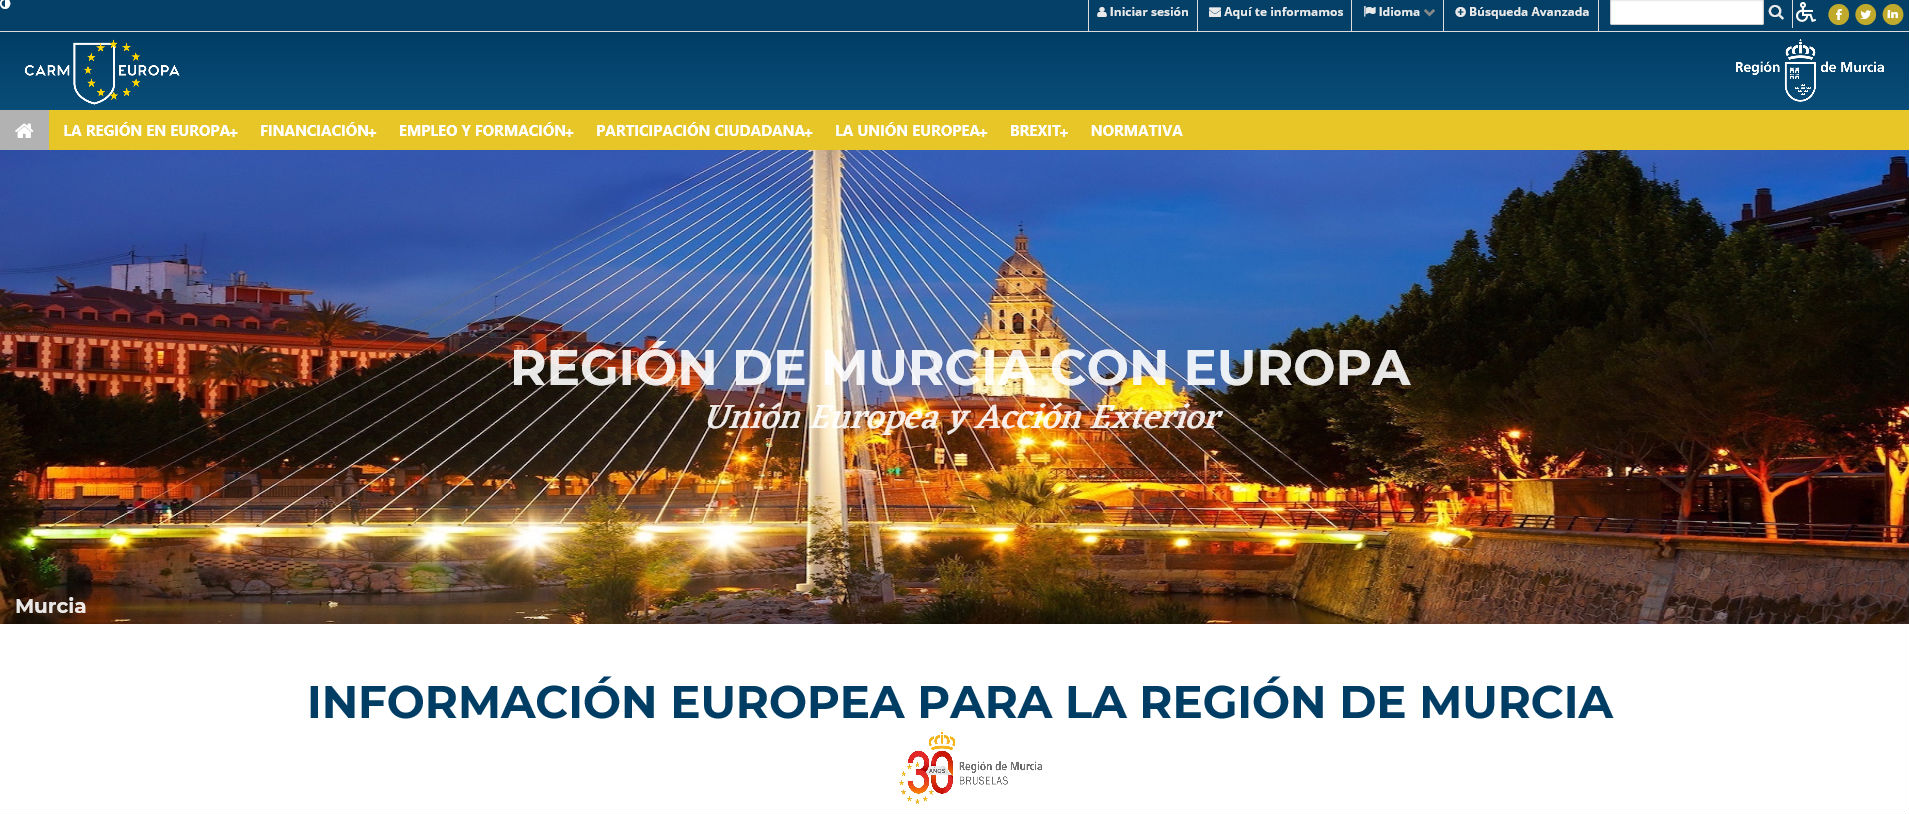 Portada de la web Región de Murcia con Europa